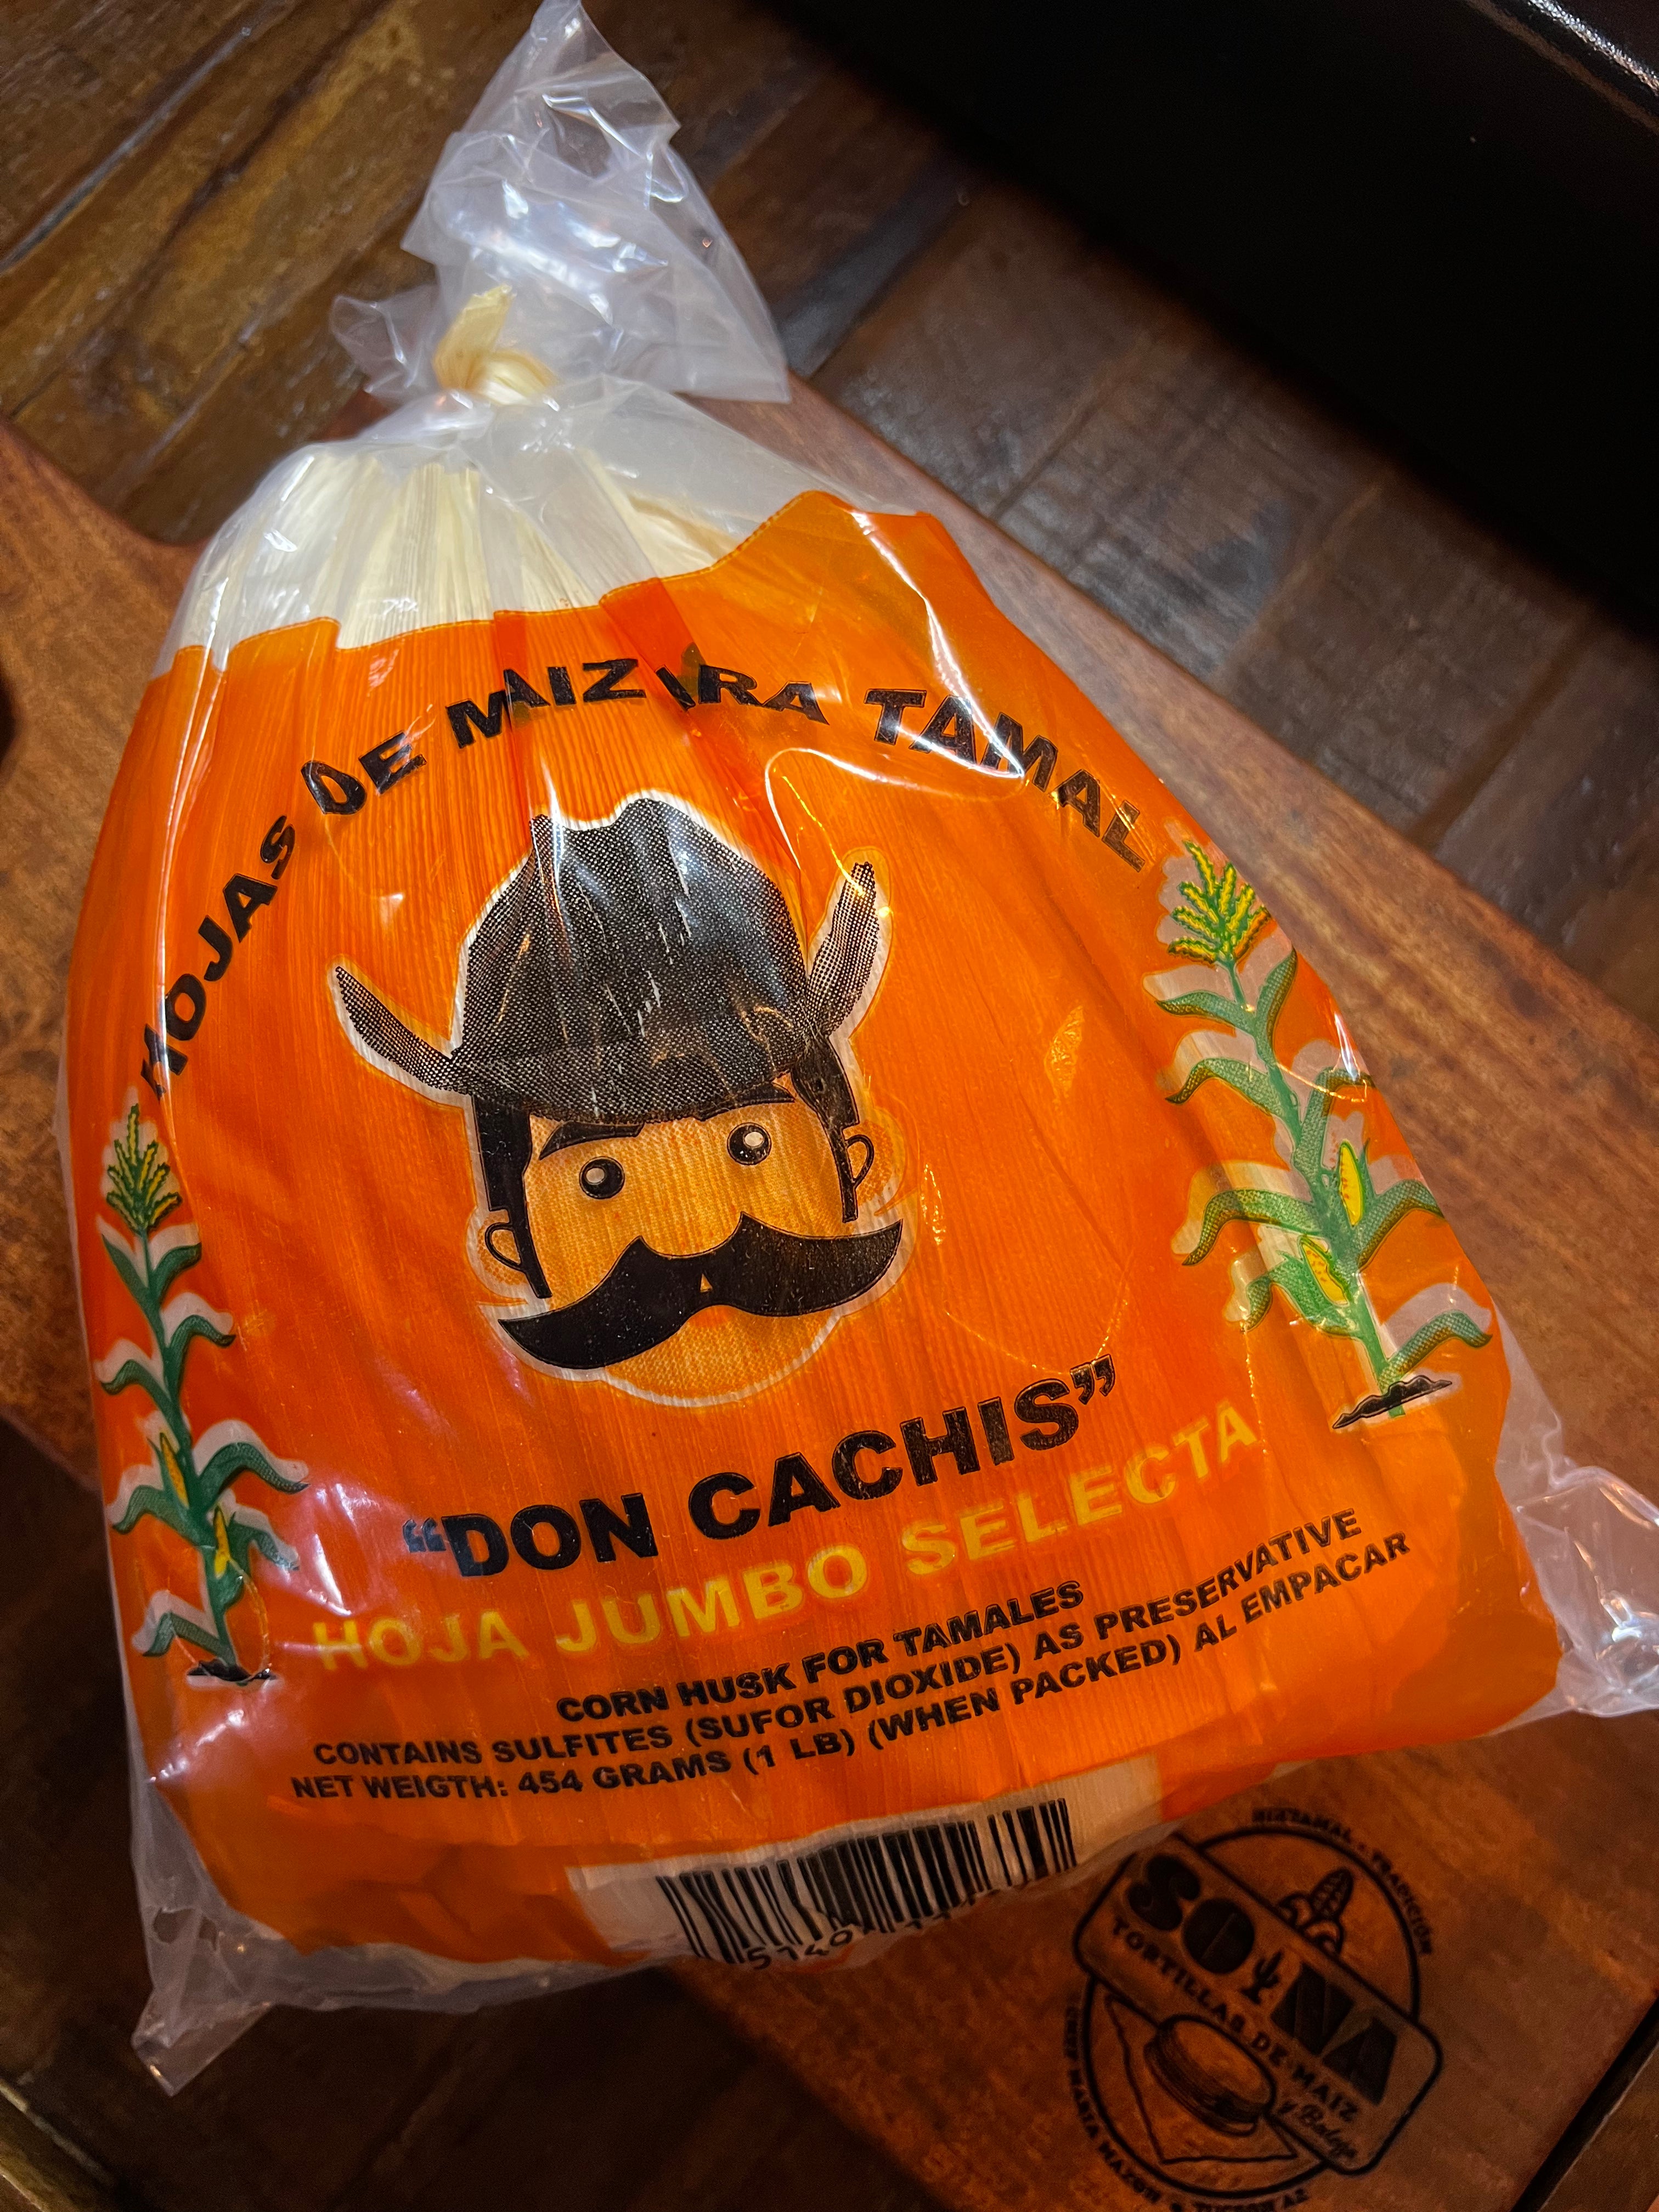 Corn Husks - 1 lb bag